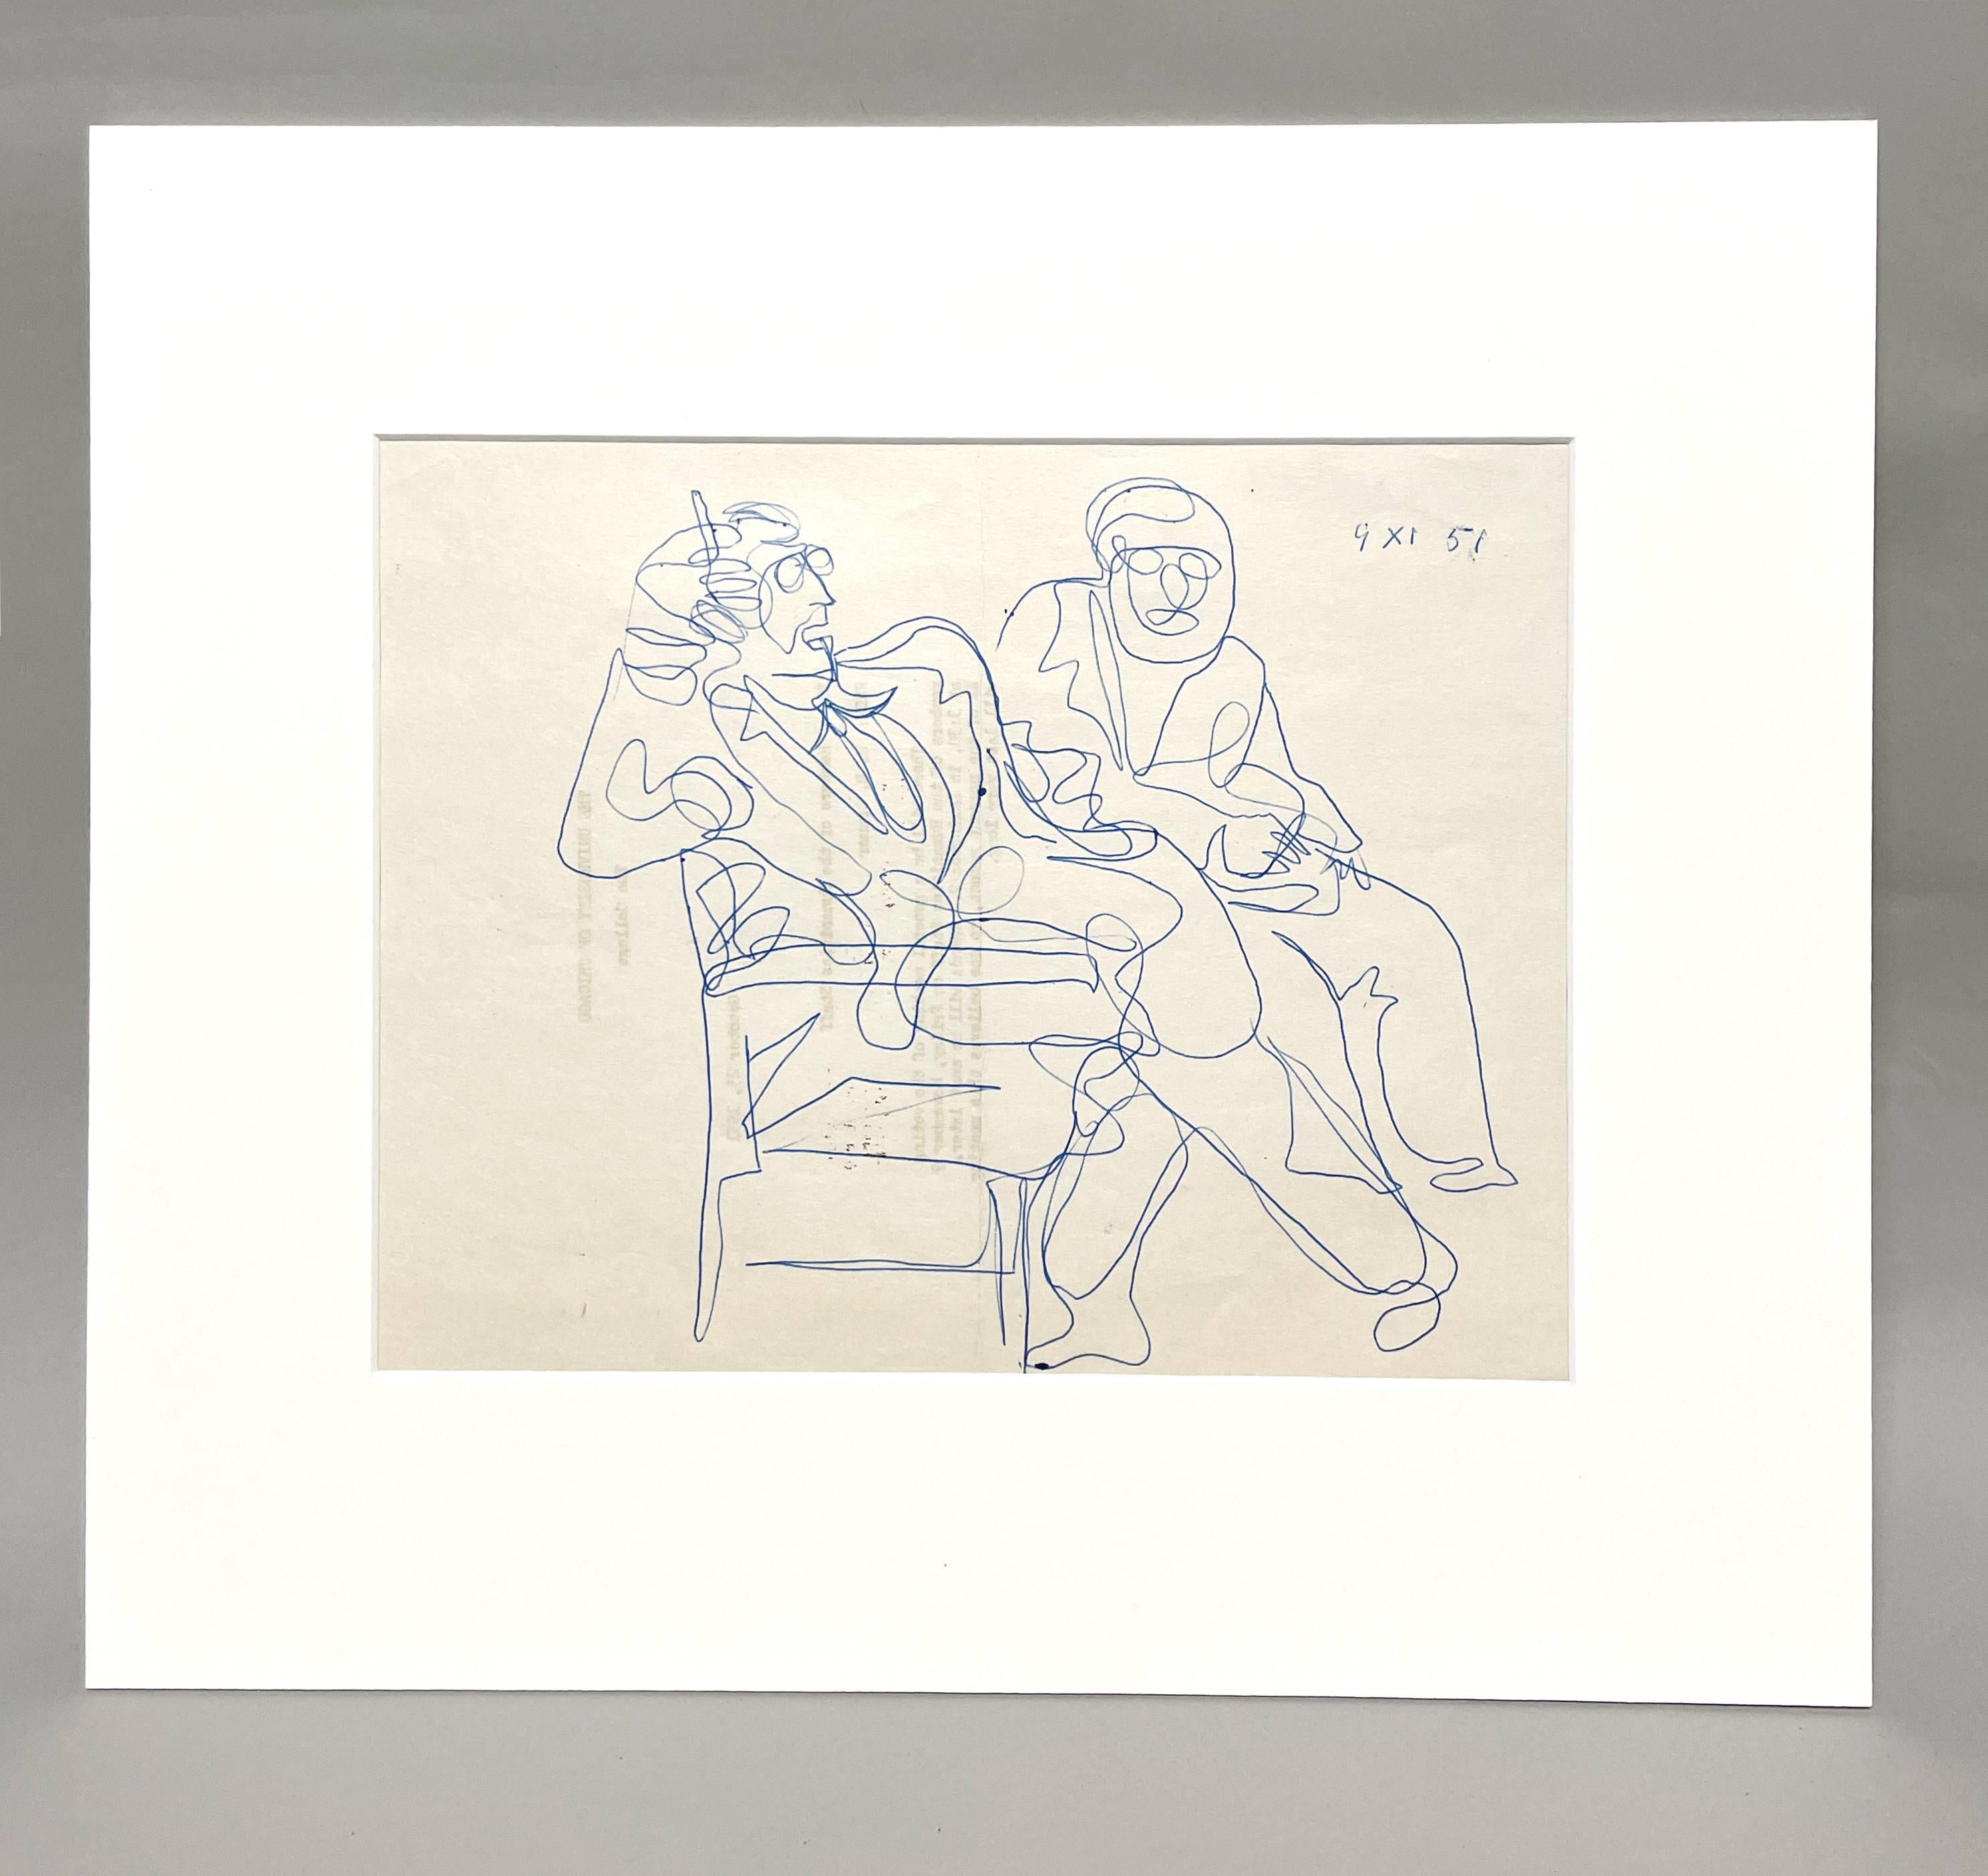 Eine Figurenstudie des Künstlers Harold Haydon mit Tusche auf Papier, die ein Gespräch darstellt.

Harold Emerson Haydon wurde 1909 in Fort William, Ontario, Kanada, geboren.   Haydon kam 1917 mit seiner Familie nach Chicago und wurde 1941 als